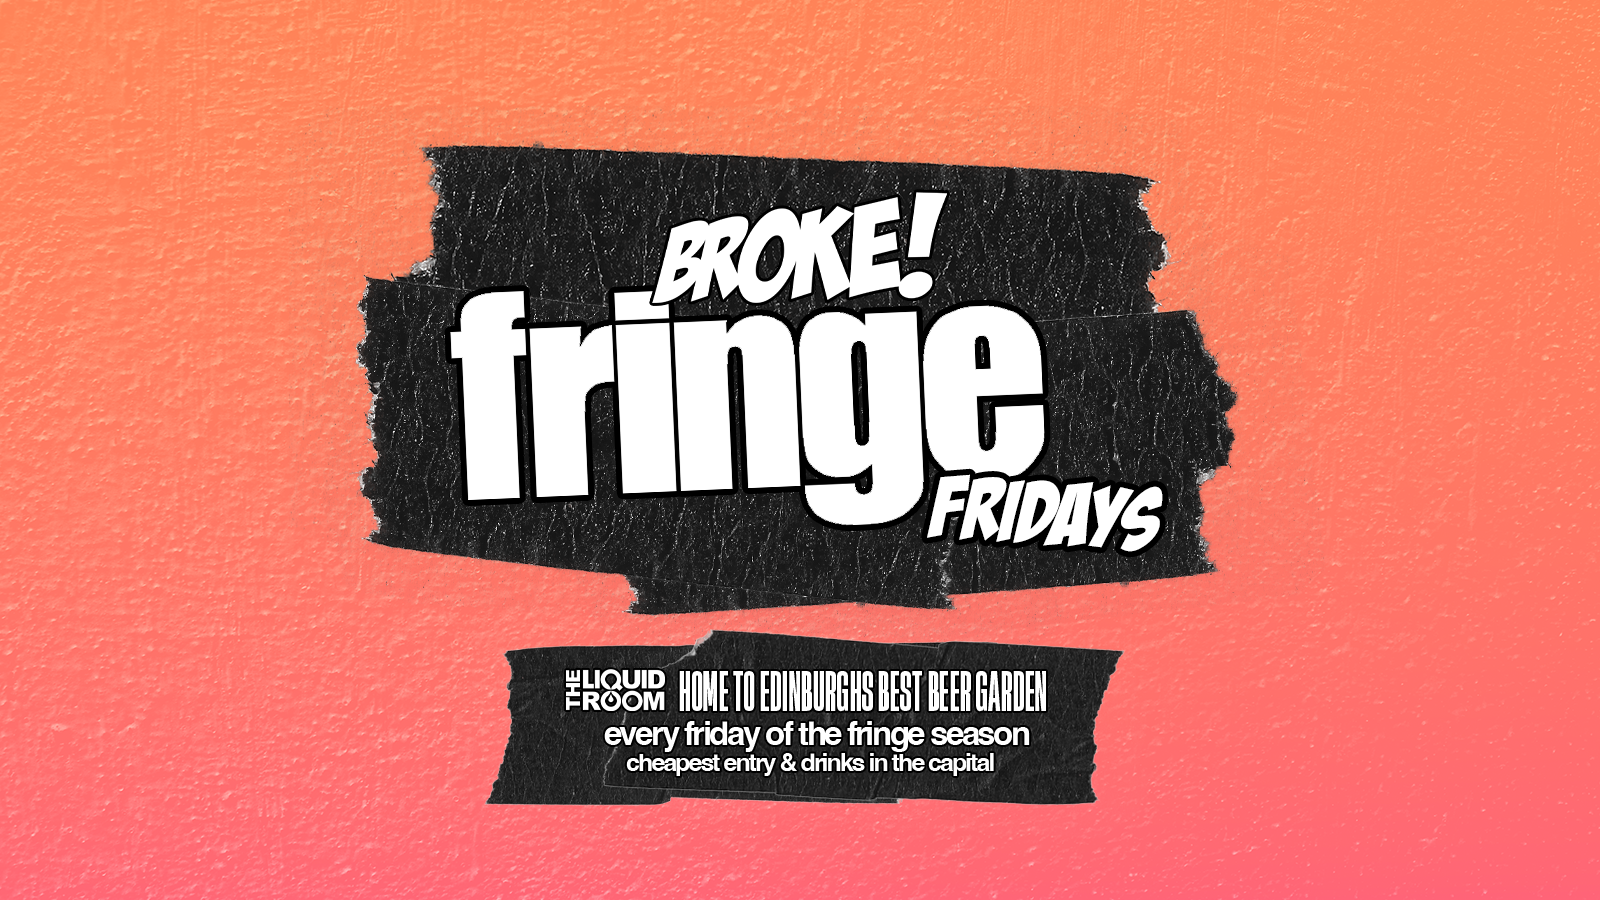 BROKE! FRIDAYS | FRINGE FRIDAYS | 16TH AUG